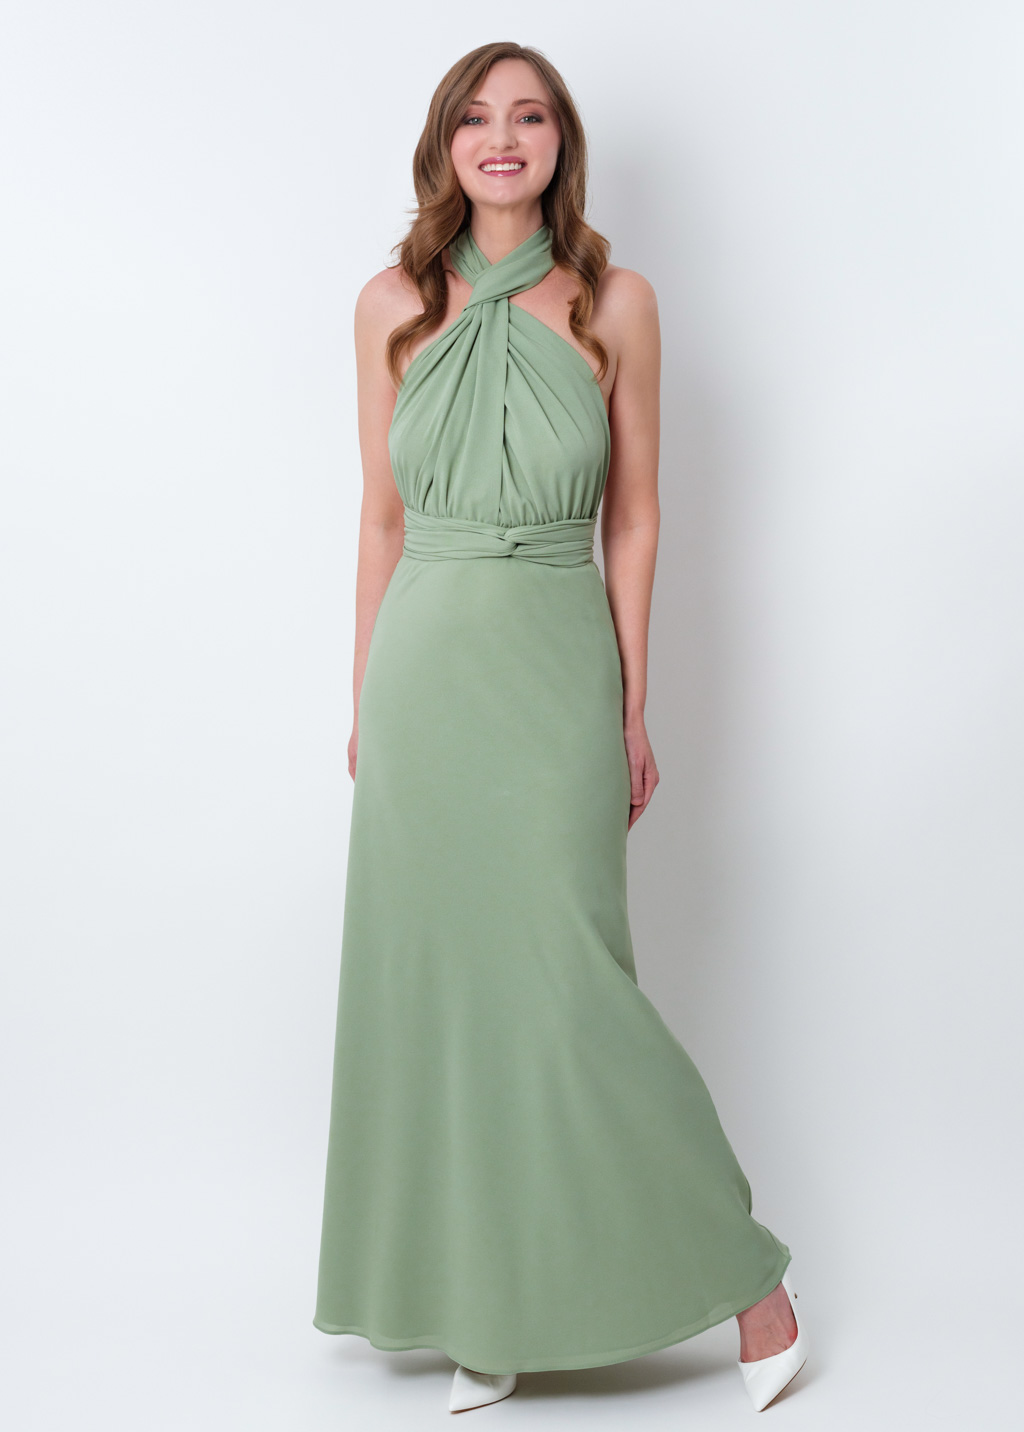 Sage green chiffon infinity dress